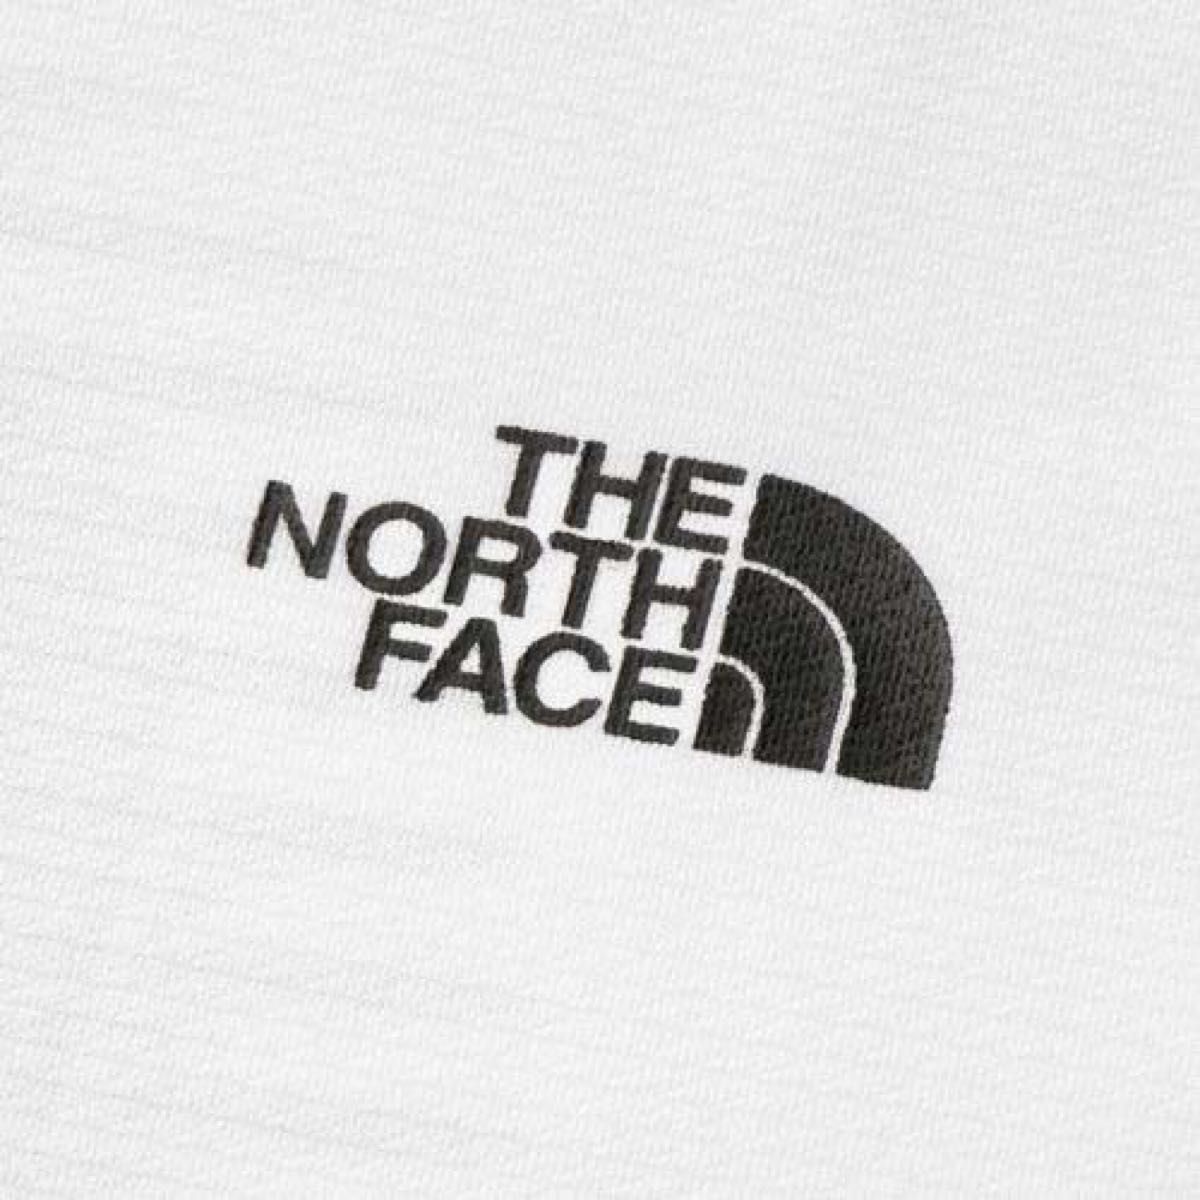 THE NORTH FACE ザノースフェイス 半袖Tシャツ ショートスリーブアンペアクルー NT62282 メンズMホワイト新品